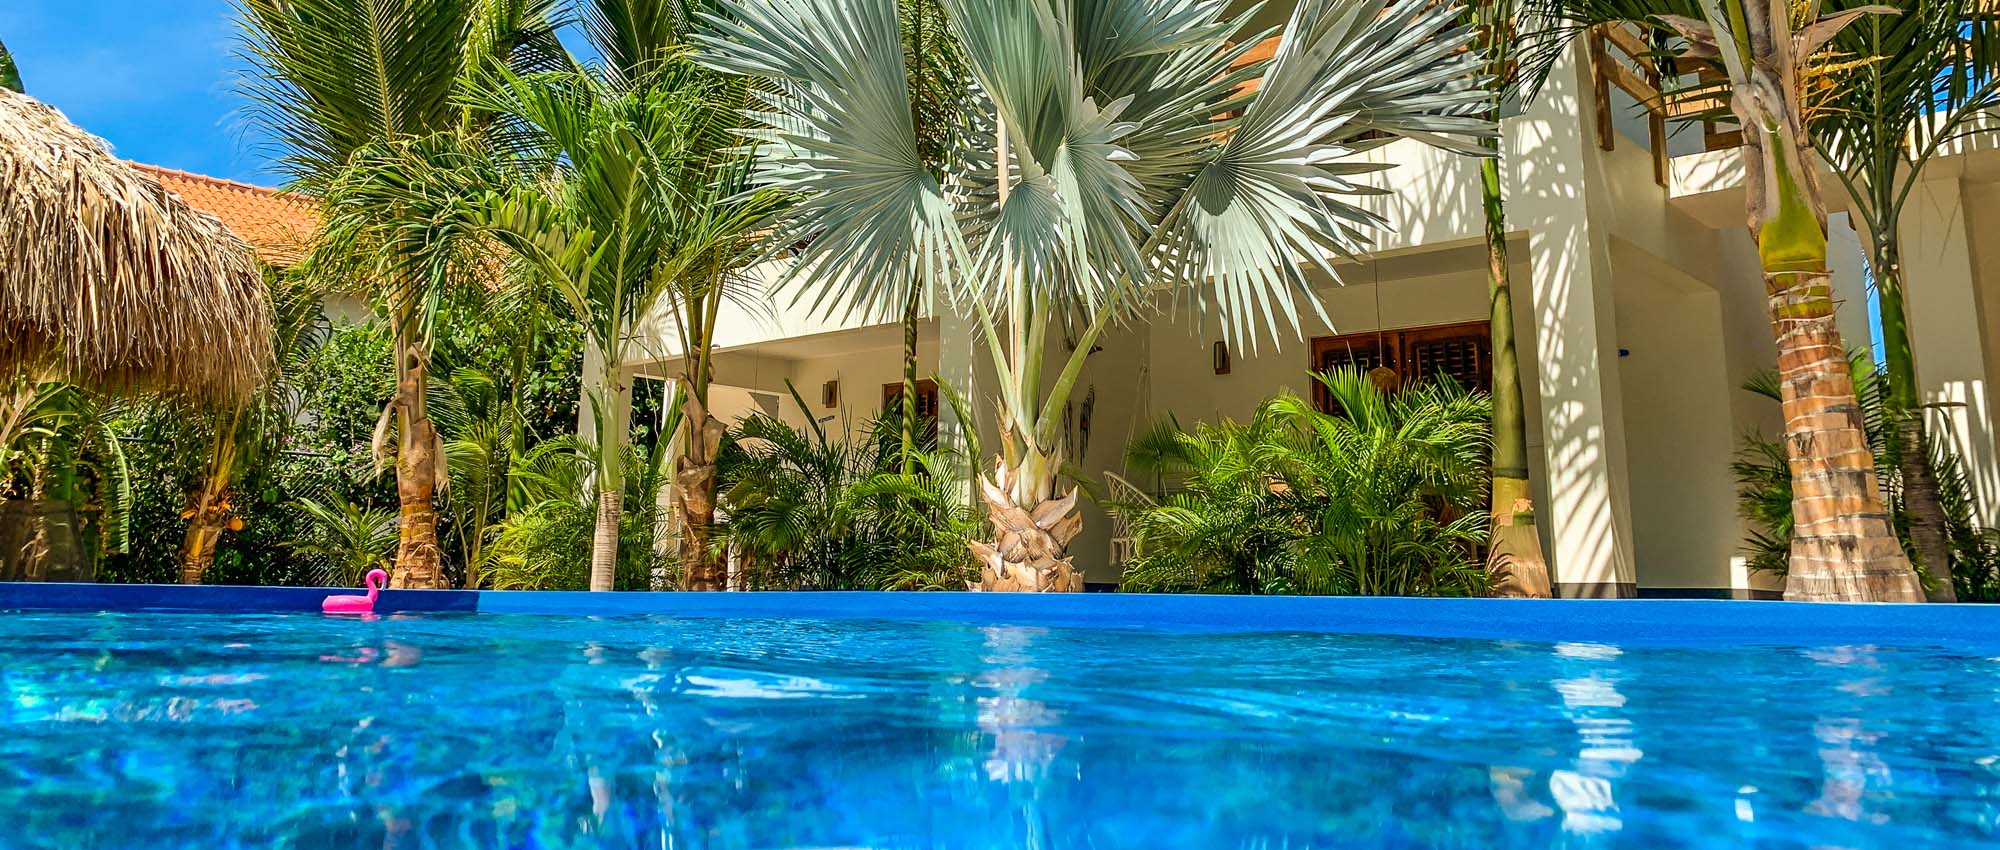 Buitenzwembad omgeven door palmbomen